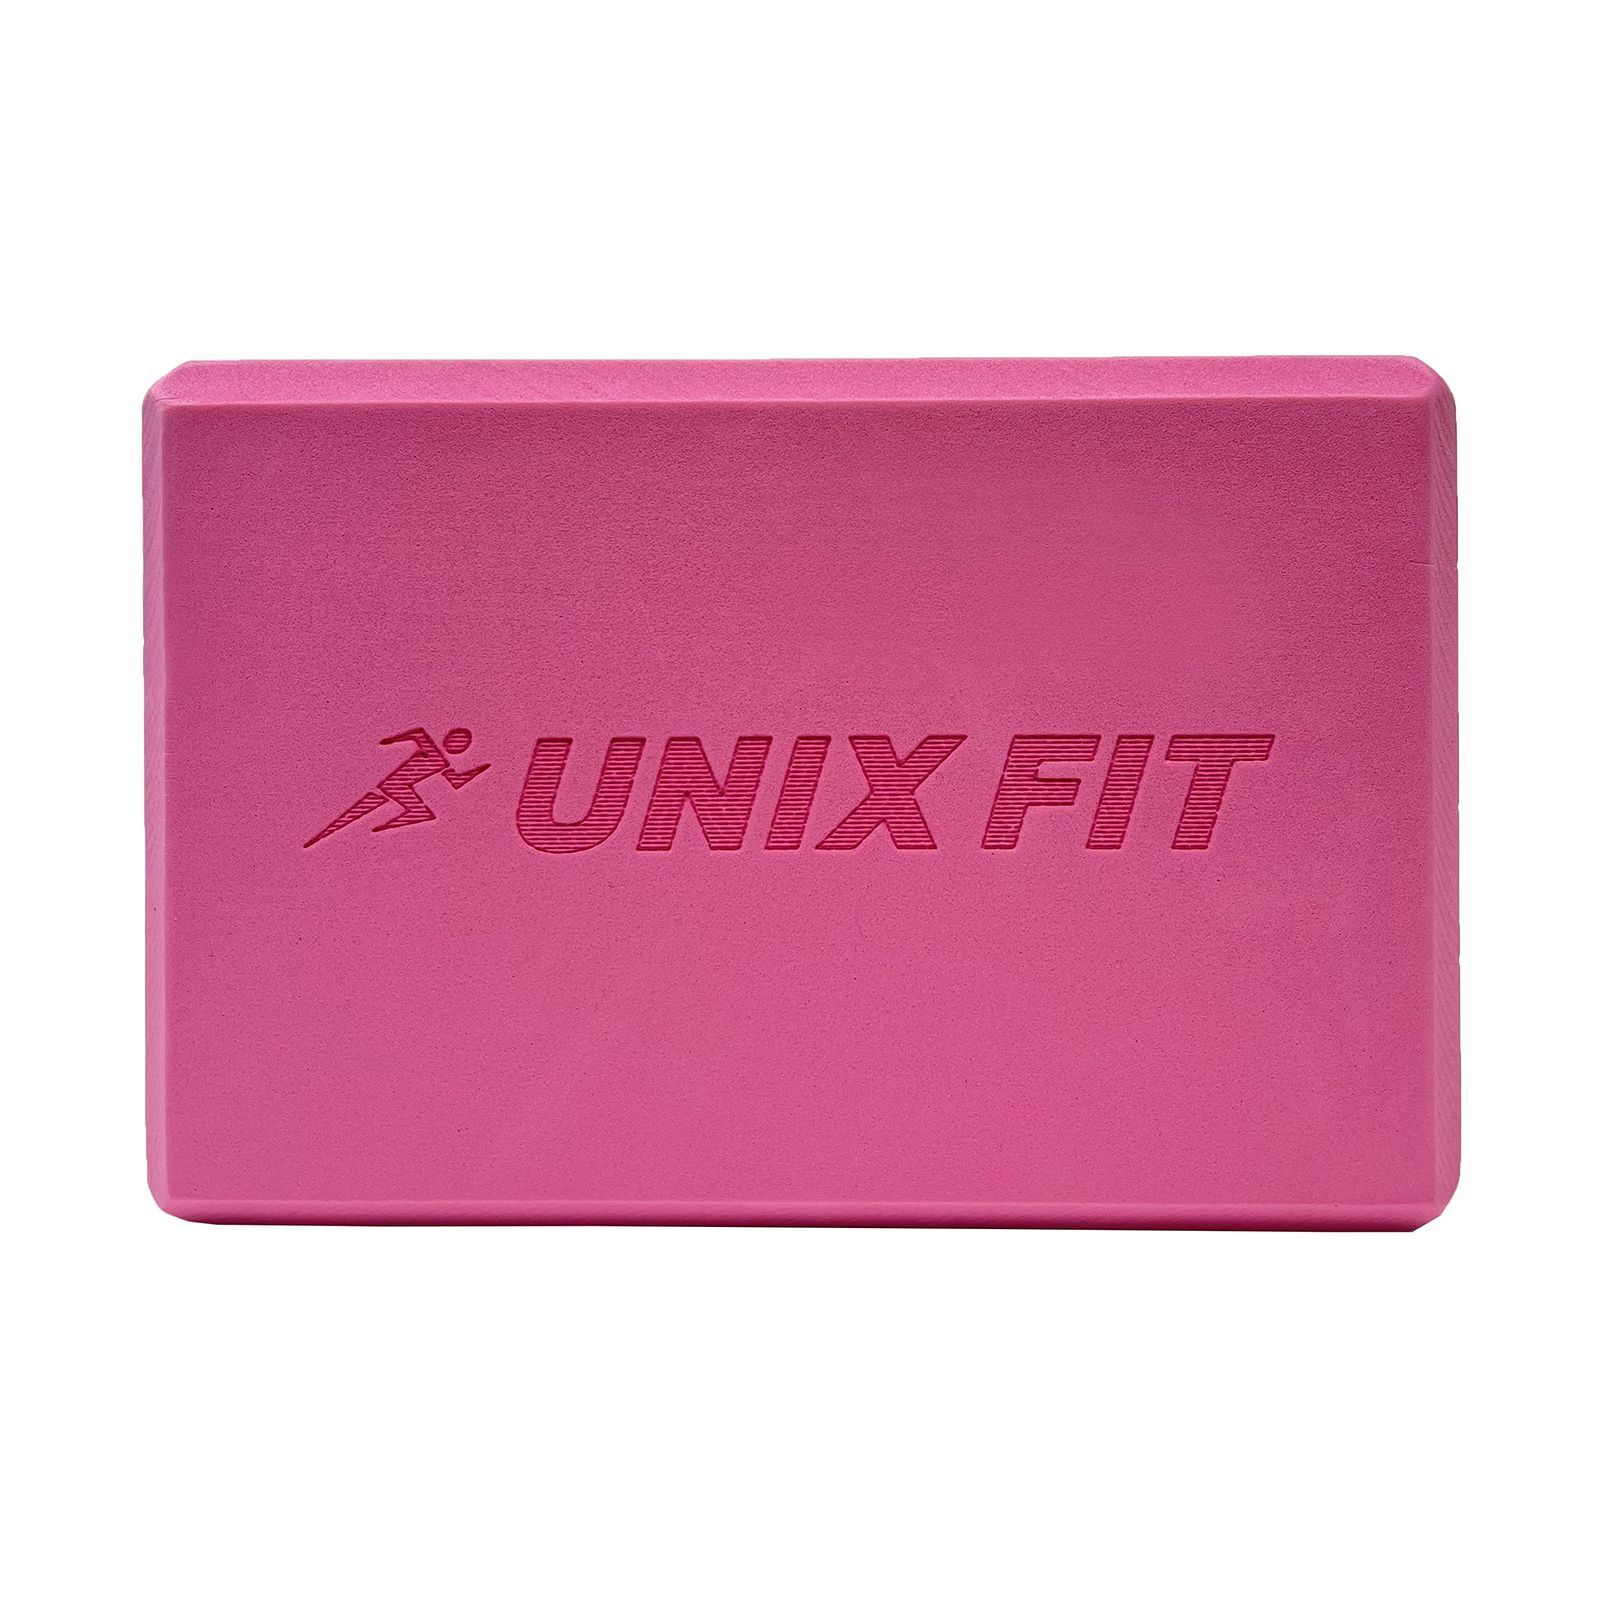 Блок для йоги и фитнеса UNIX Fit (200 г) 23 х 15 х 7 см, 1 шт, розовый UNIX Fit™ Блоки для йоги и фитнеса